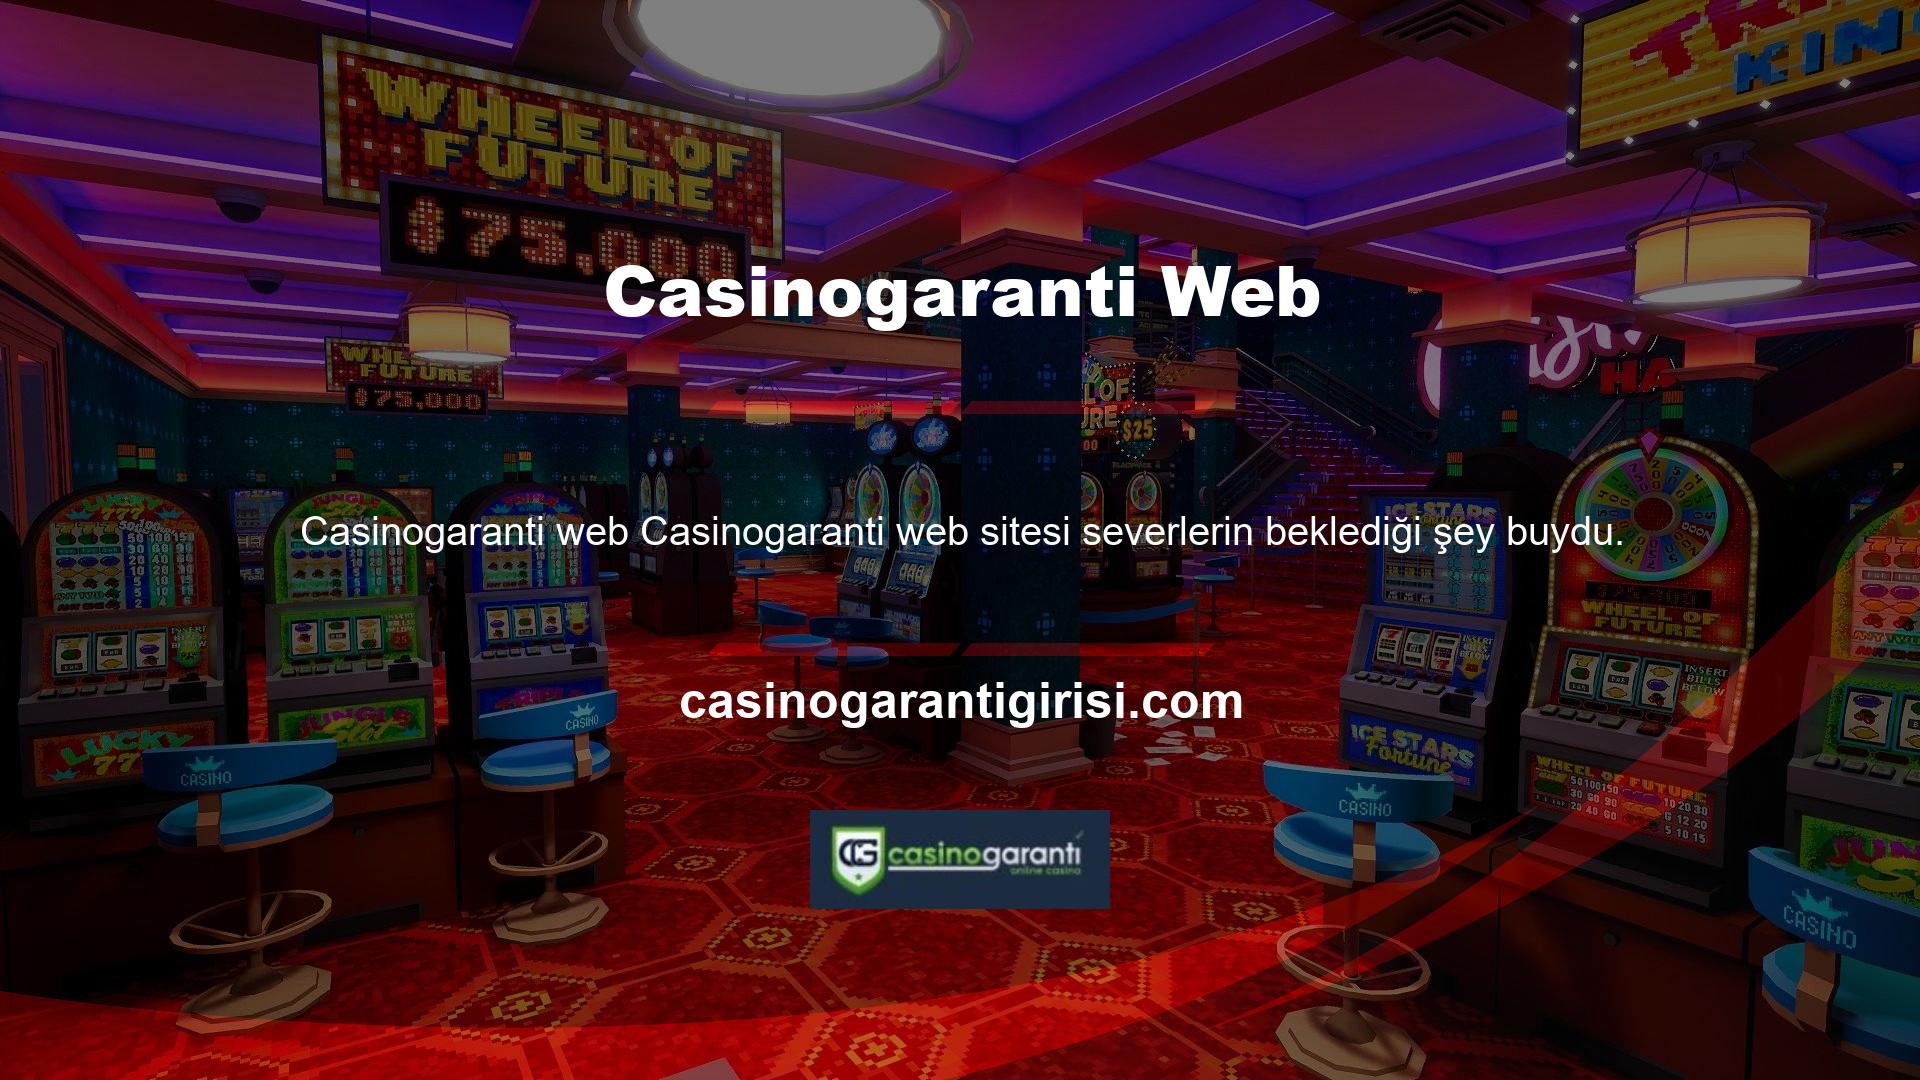 Bu amaçla Casinogaranti, müşterilerinin ihtiyaçlarını karşılamak için bir mobil uygulama da yayınlamıştır